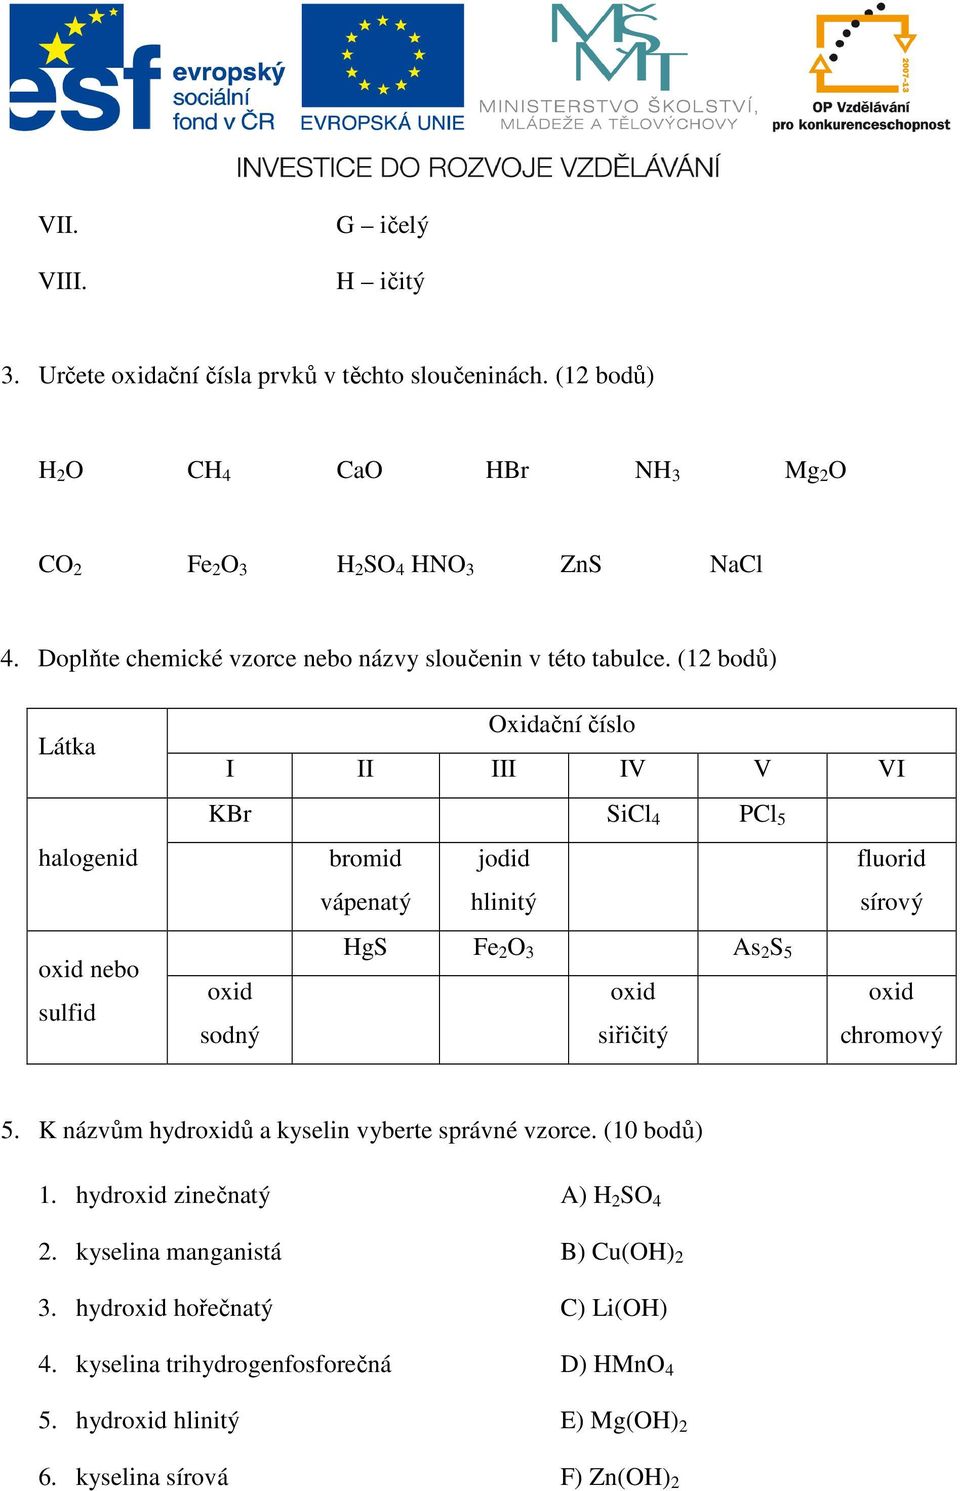 (12 bodů) Látka Oxidační číslo I II III IV V VI halogenid KBr SiCl 4 PCl 5 bromid vápenatý jodid hlinitý fluorid sírový oxid nebo sulfid oxid sodný HgS Fe 2 O 3 As 2 S 5